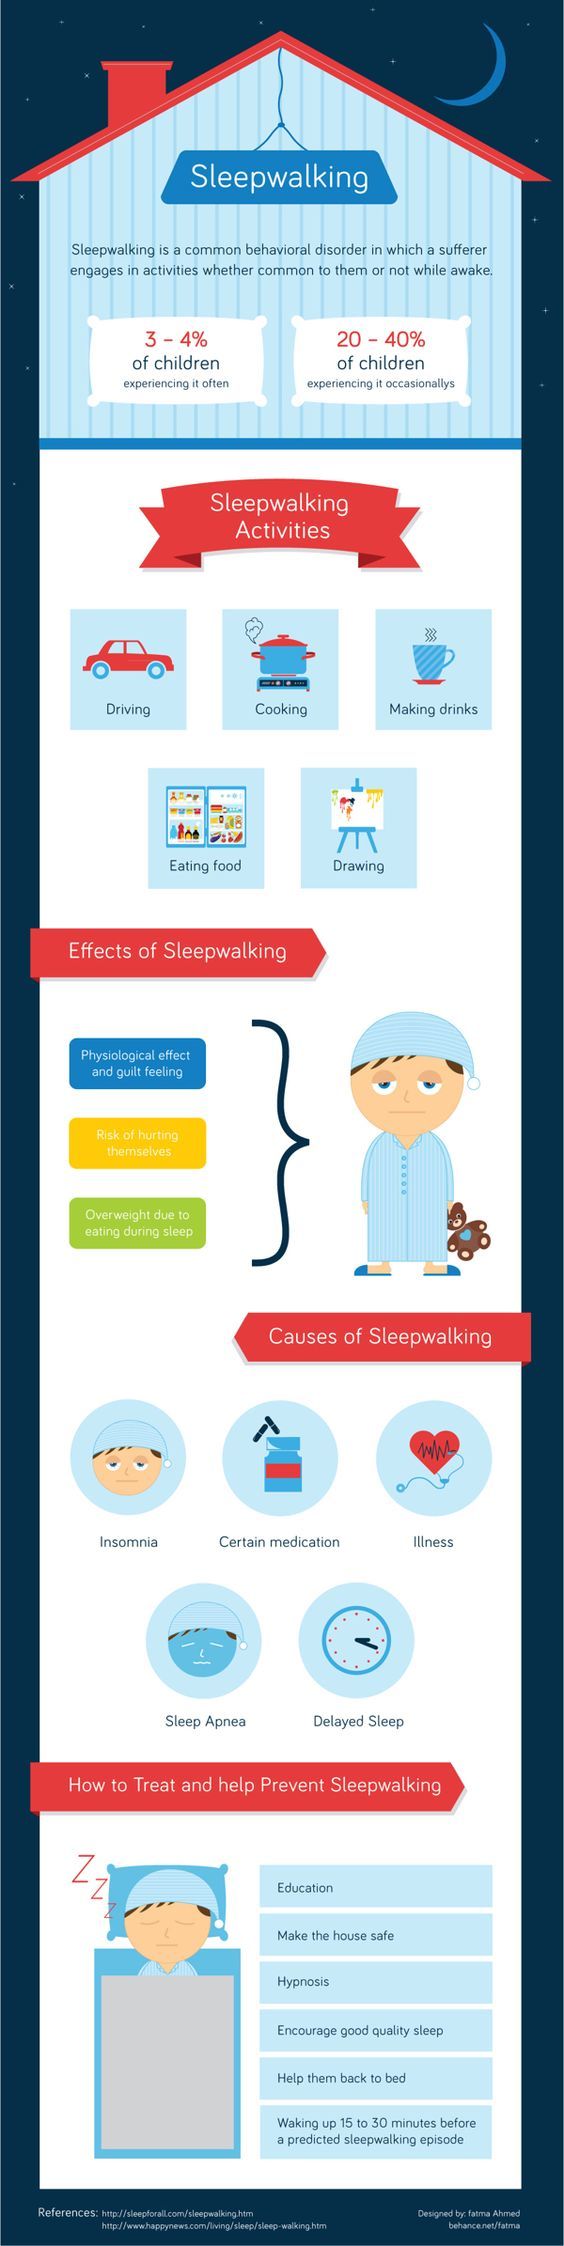 sleepwalking infographic